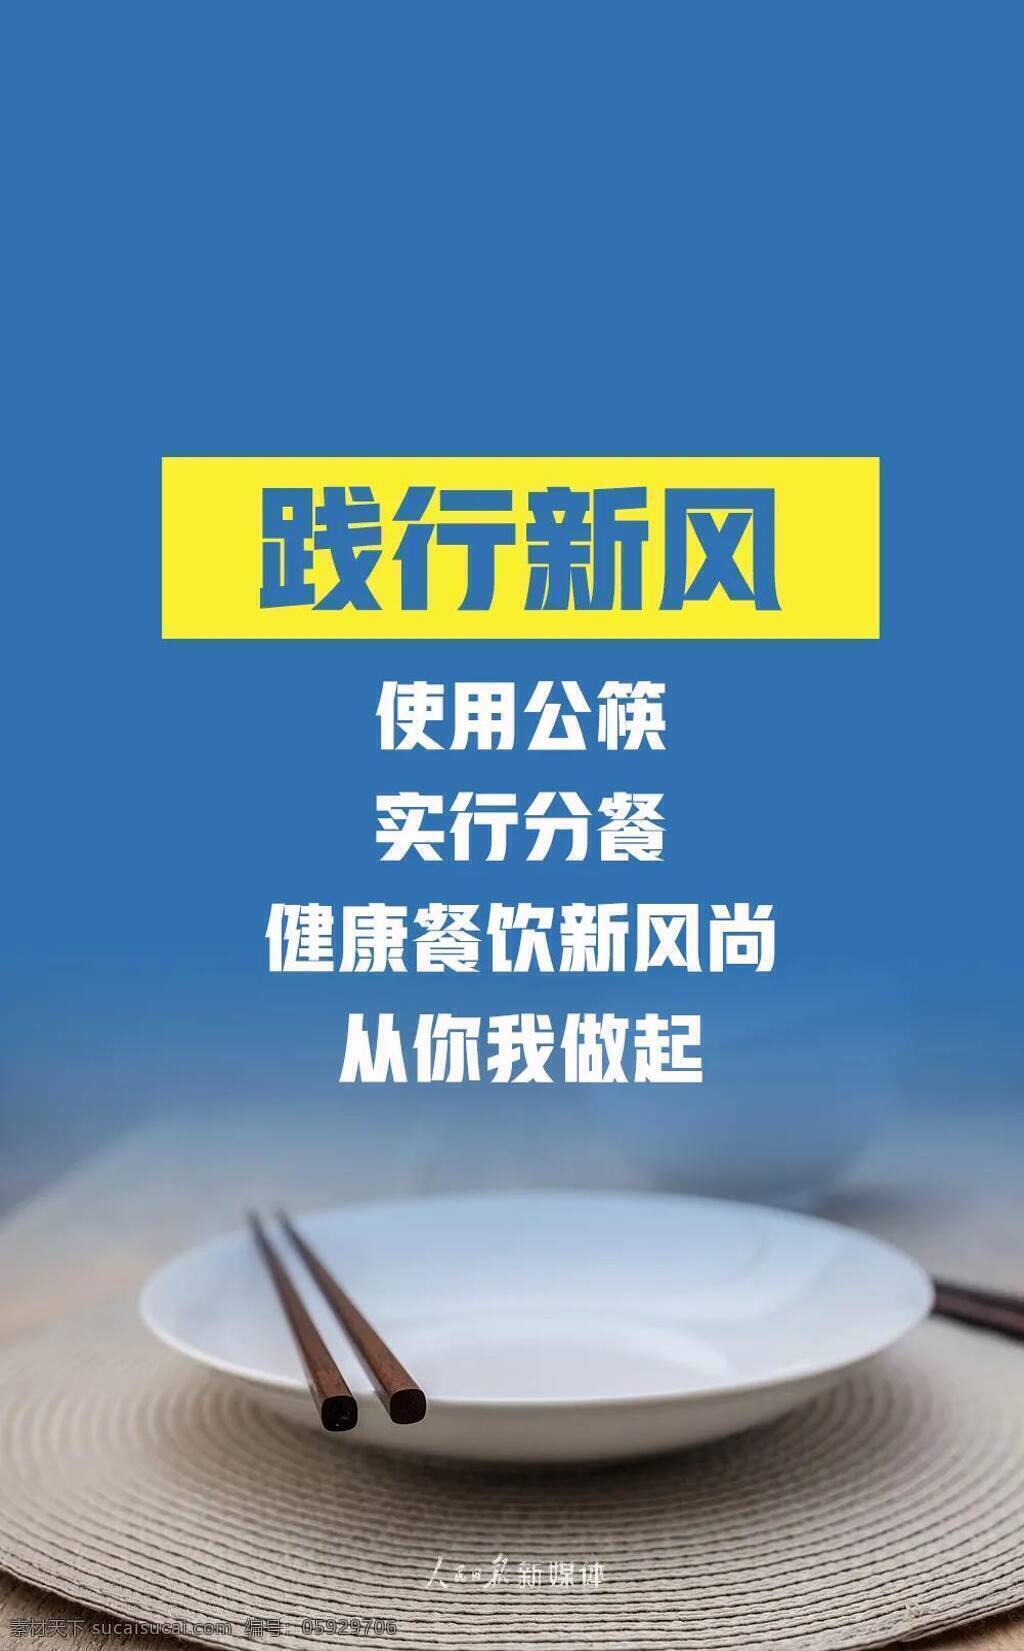 拒绝 舌尖 上 浪费 践行 新风 使用公筷 实行分餐 健康餐饮 室内广告设计